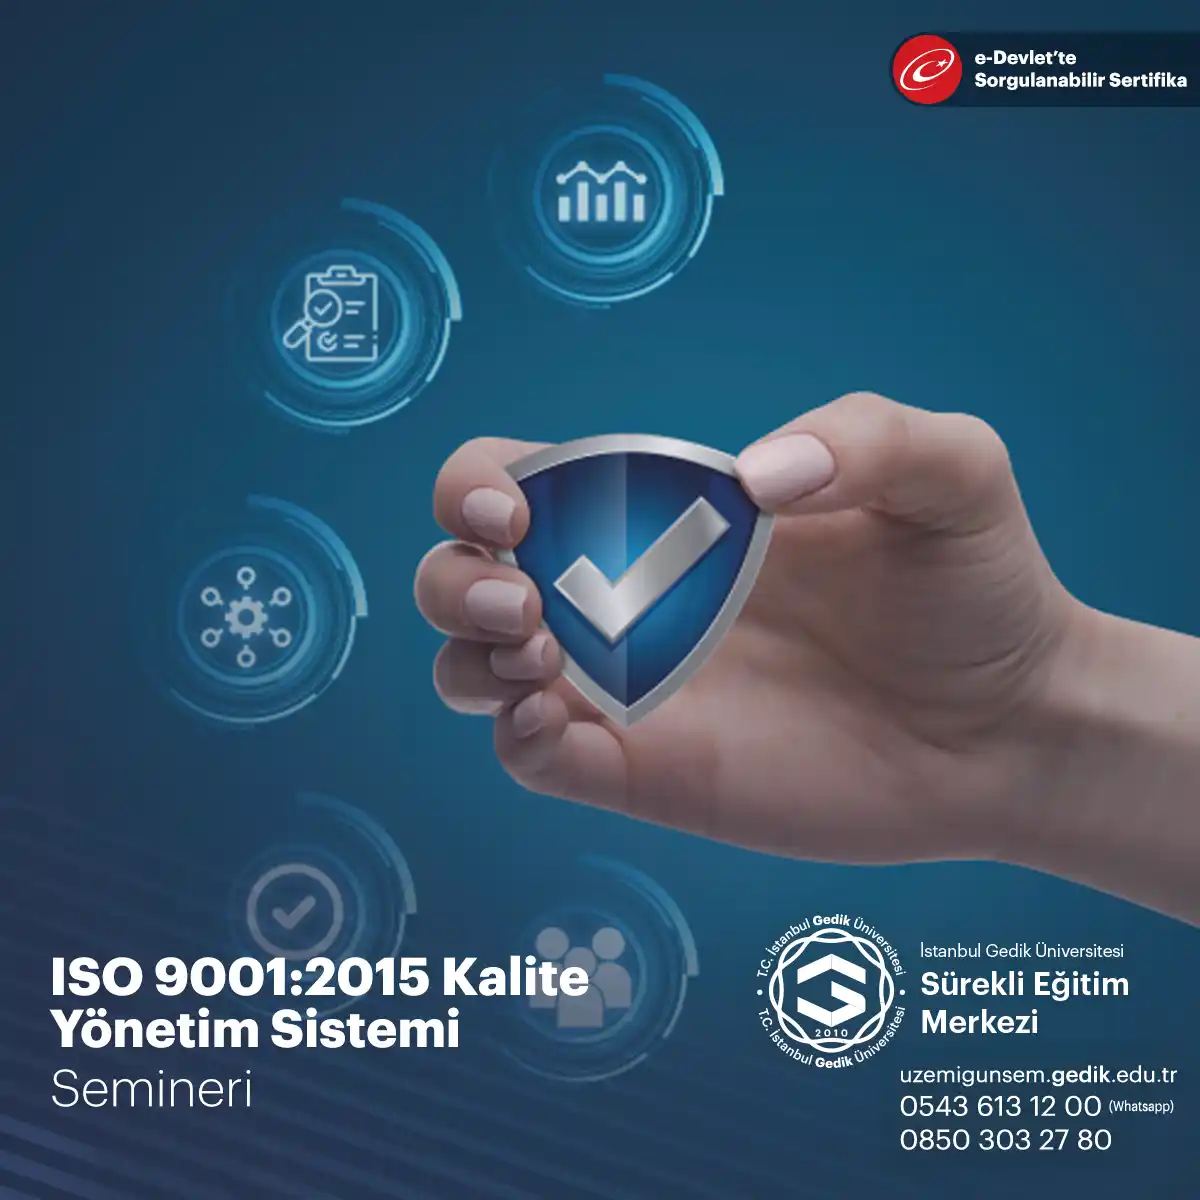 ISO 9001:2015 Kalite Yönetim Sistemi semineri, kurumların ürün ve hizmet kalitesini artırmak için kalite yönetim sistemlerini nasıl kuracakları ve sürdürecekleri konusunda katılımcılara bilgi veren bir seminerdir.